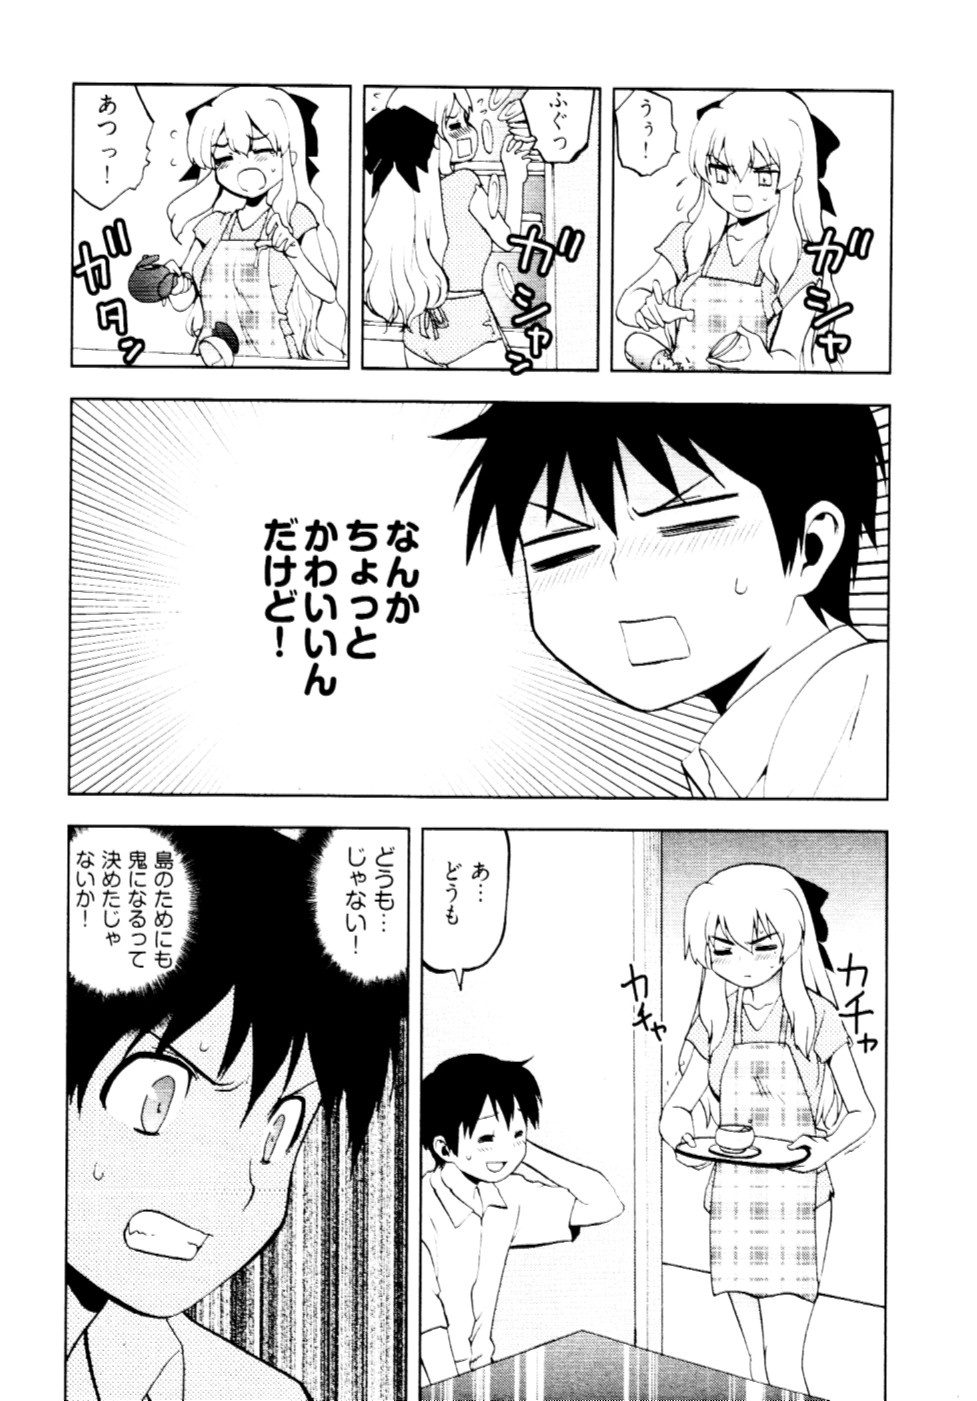 [Togami Shin] Tonosama no Nanahon yari Vol.2 page 19 full